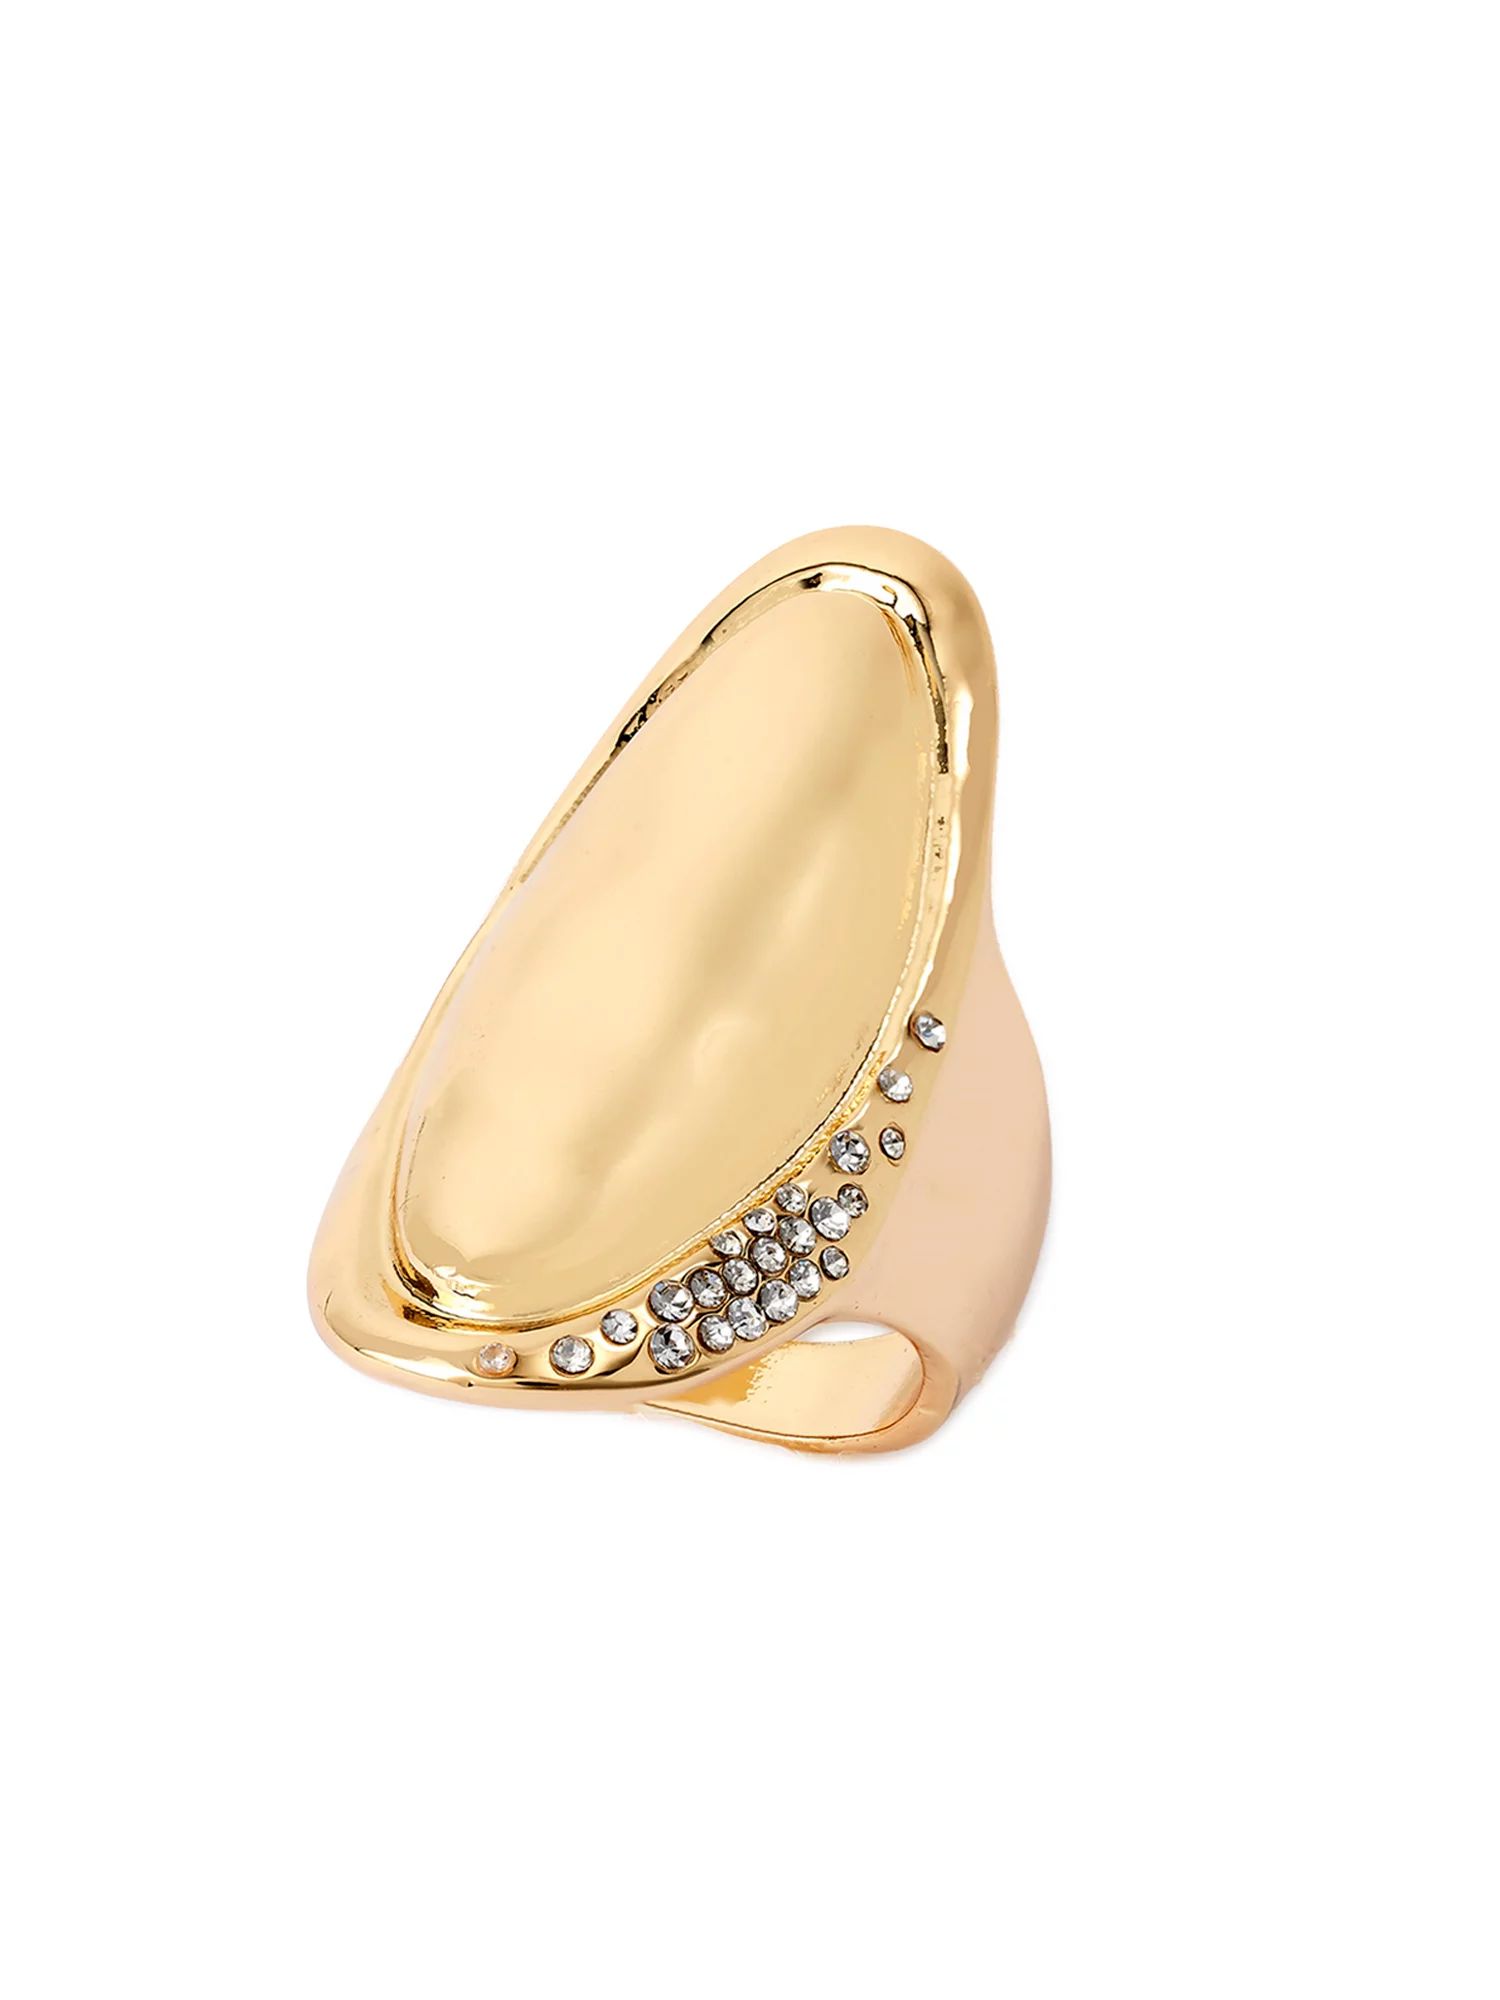 Sofia Jewelry by Sofia Vergara Women's Gold Tone Pavé Oval Ring, Size 8 | Walmart (US)